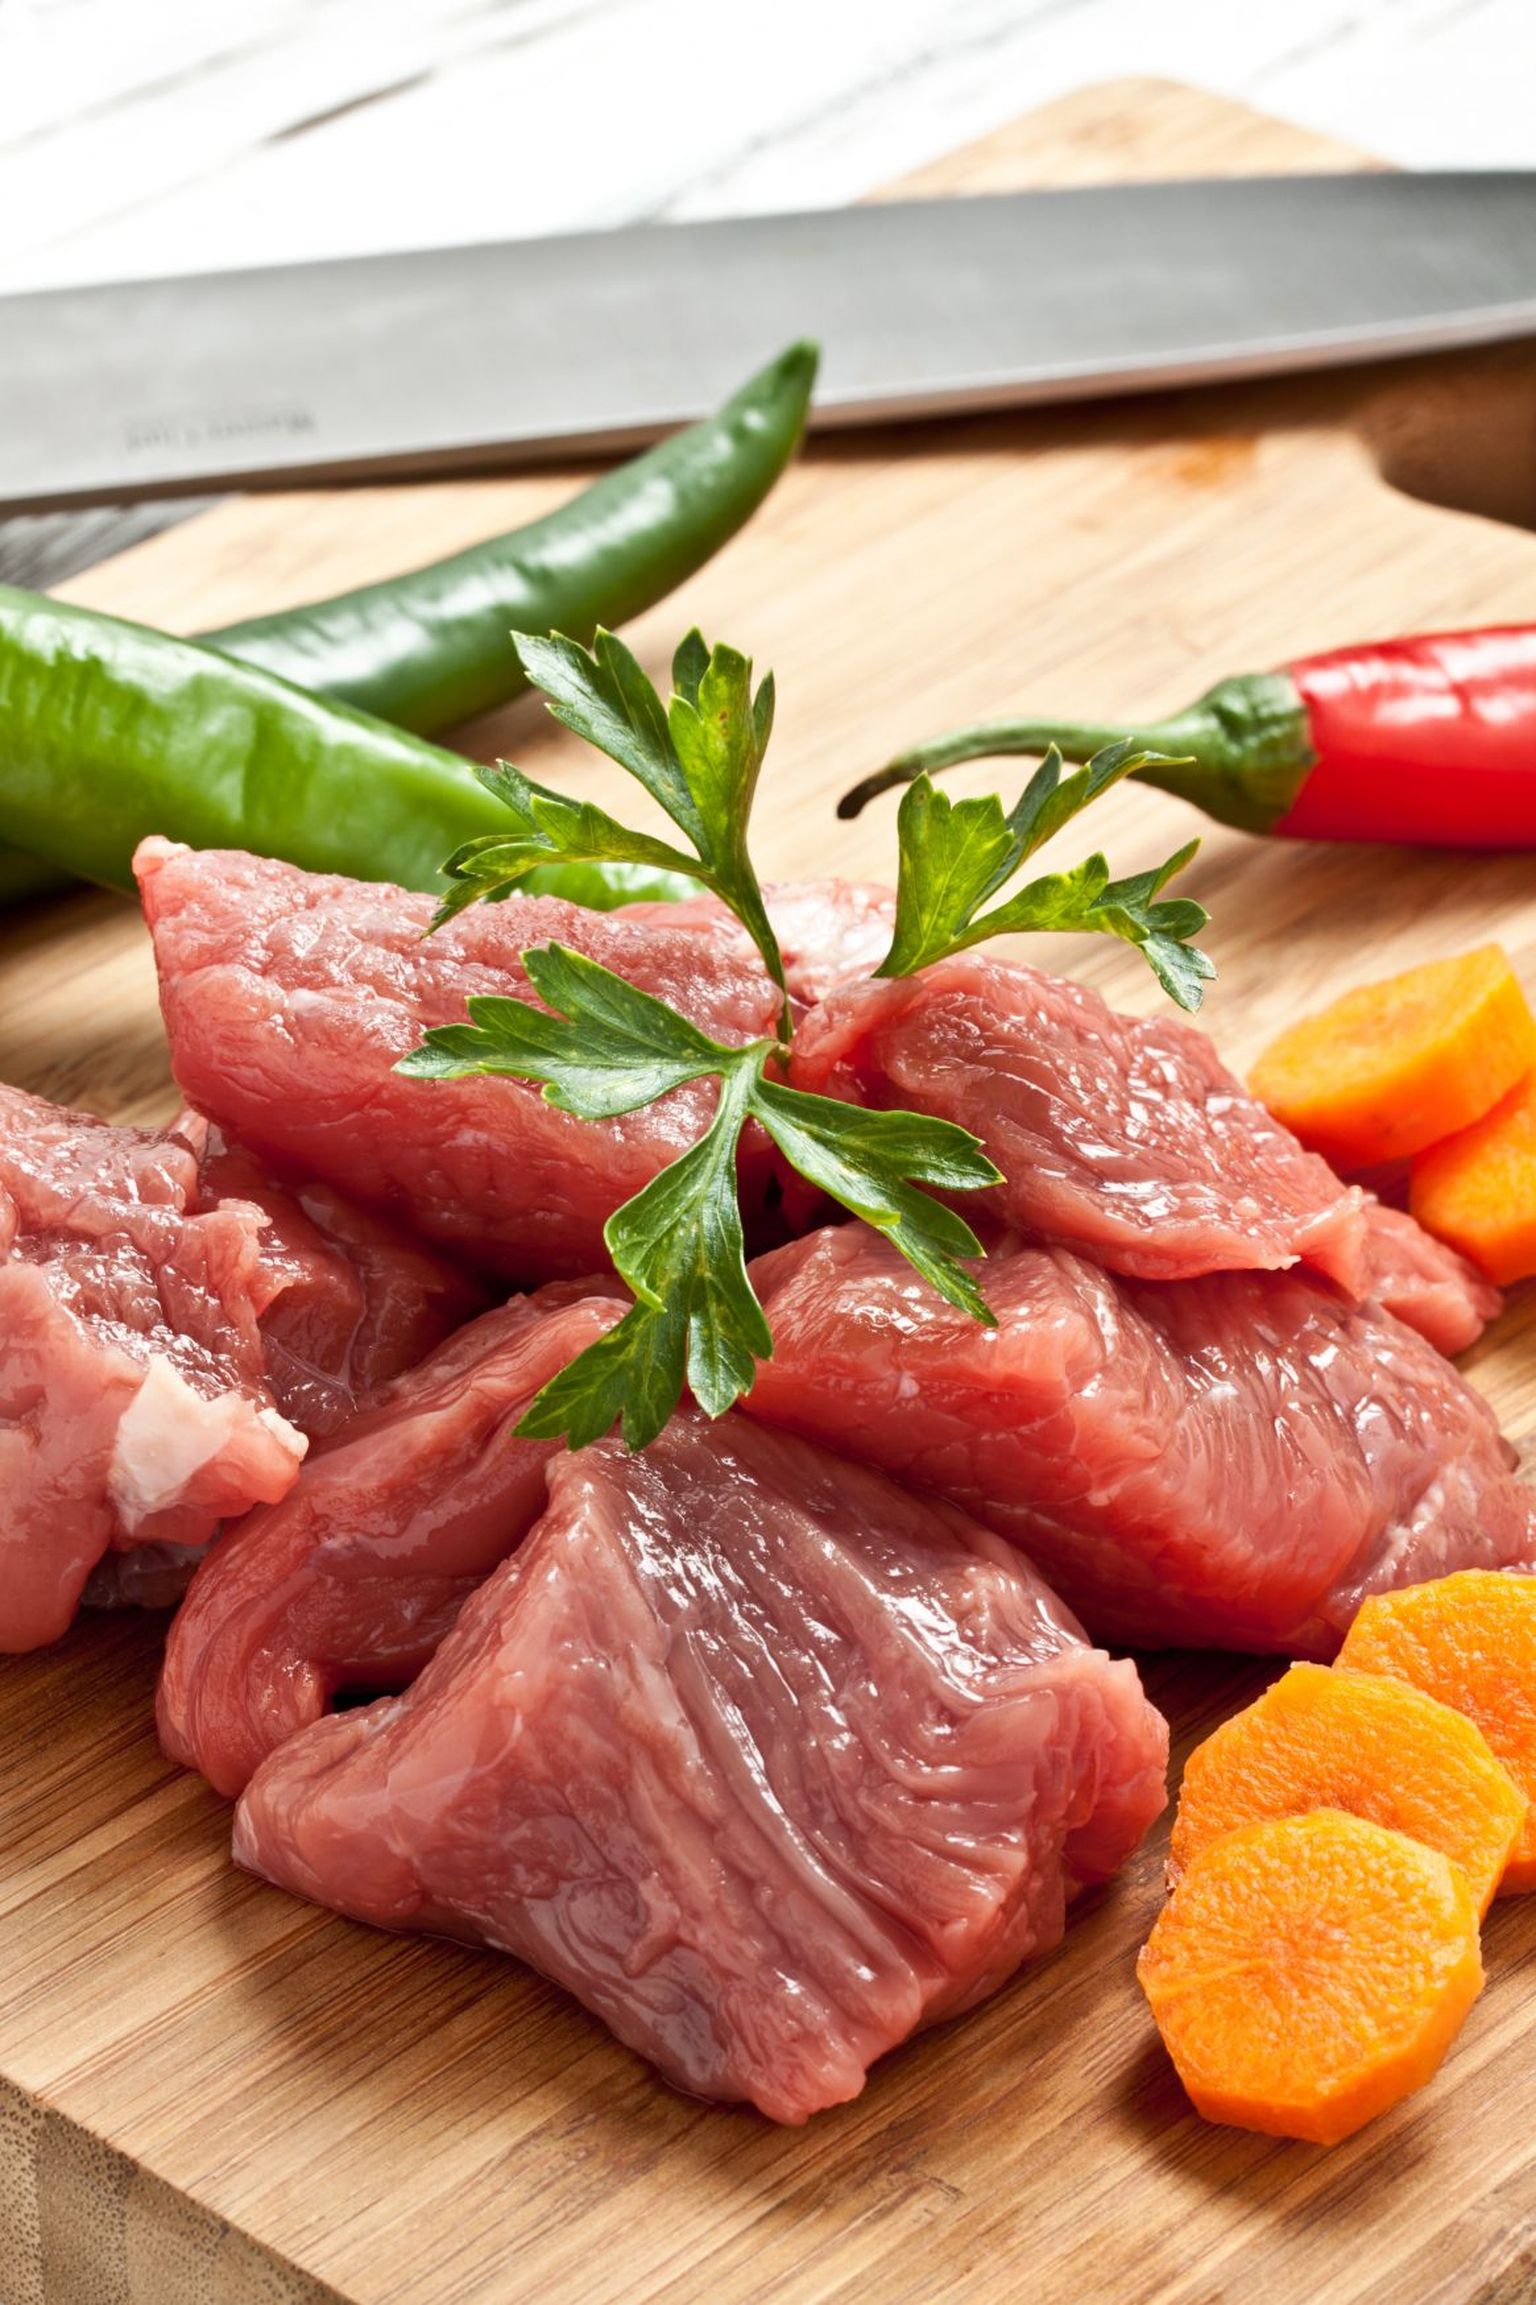 Tasub osta töötlemata liha, mida saad vastavalt oma soovile maitsestada.